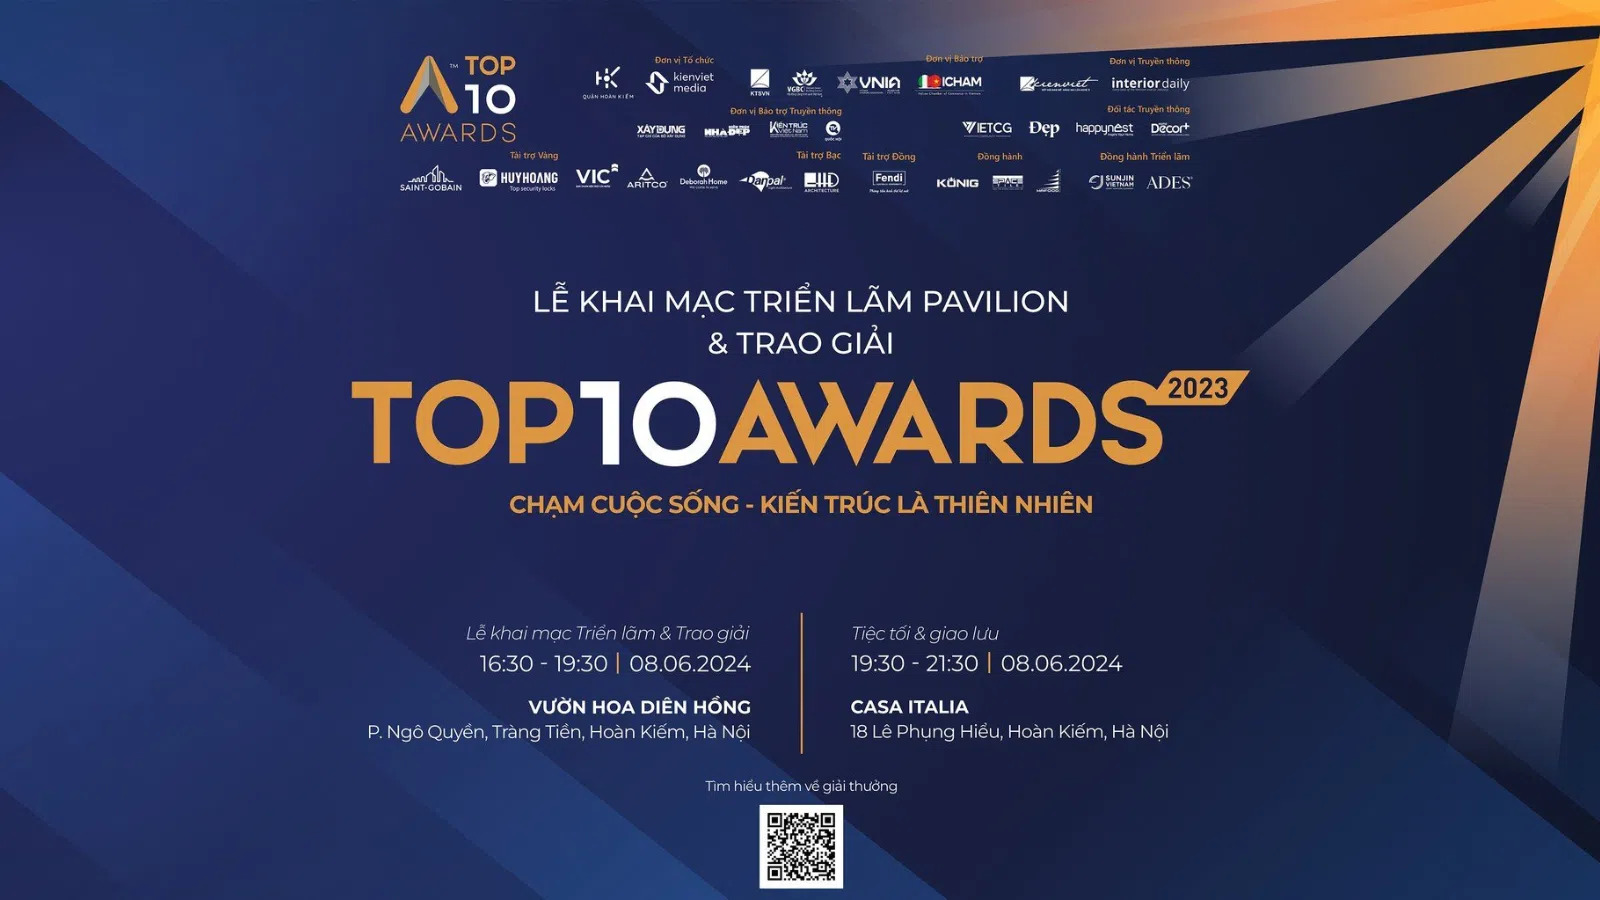 Lễ Trao giải Top 10 Awards 2023 và khai mạc Triển lãm Top 10 Pavilion